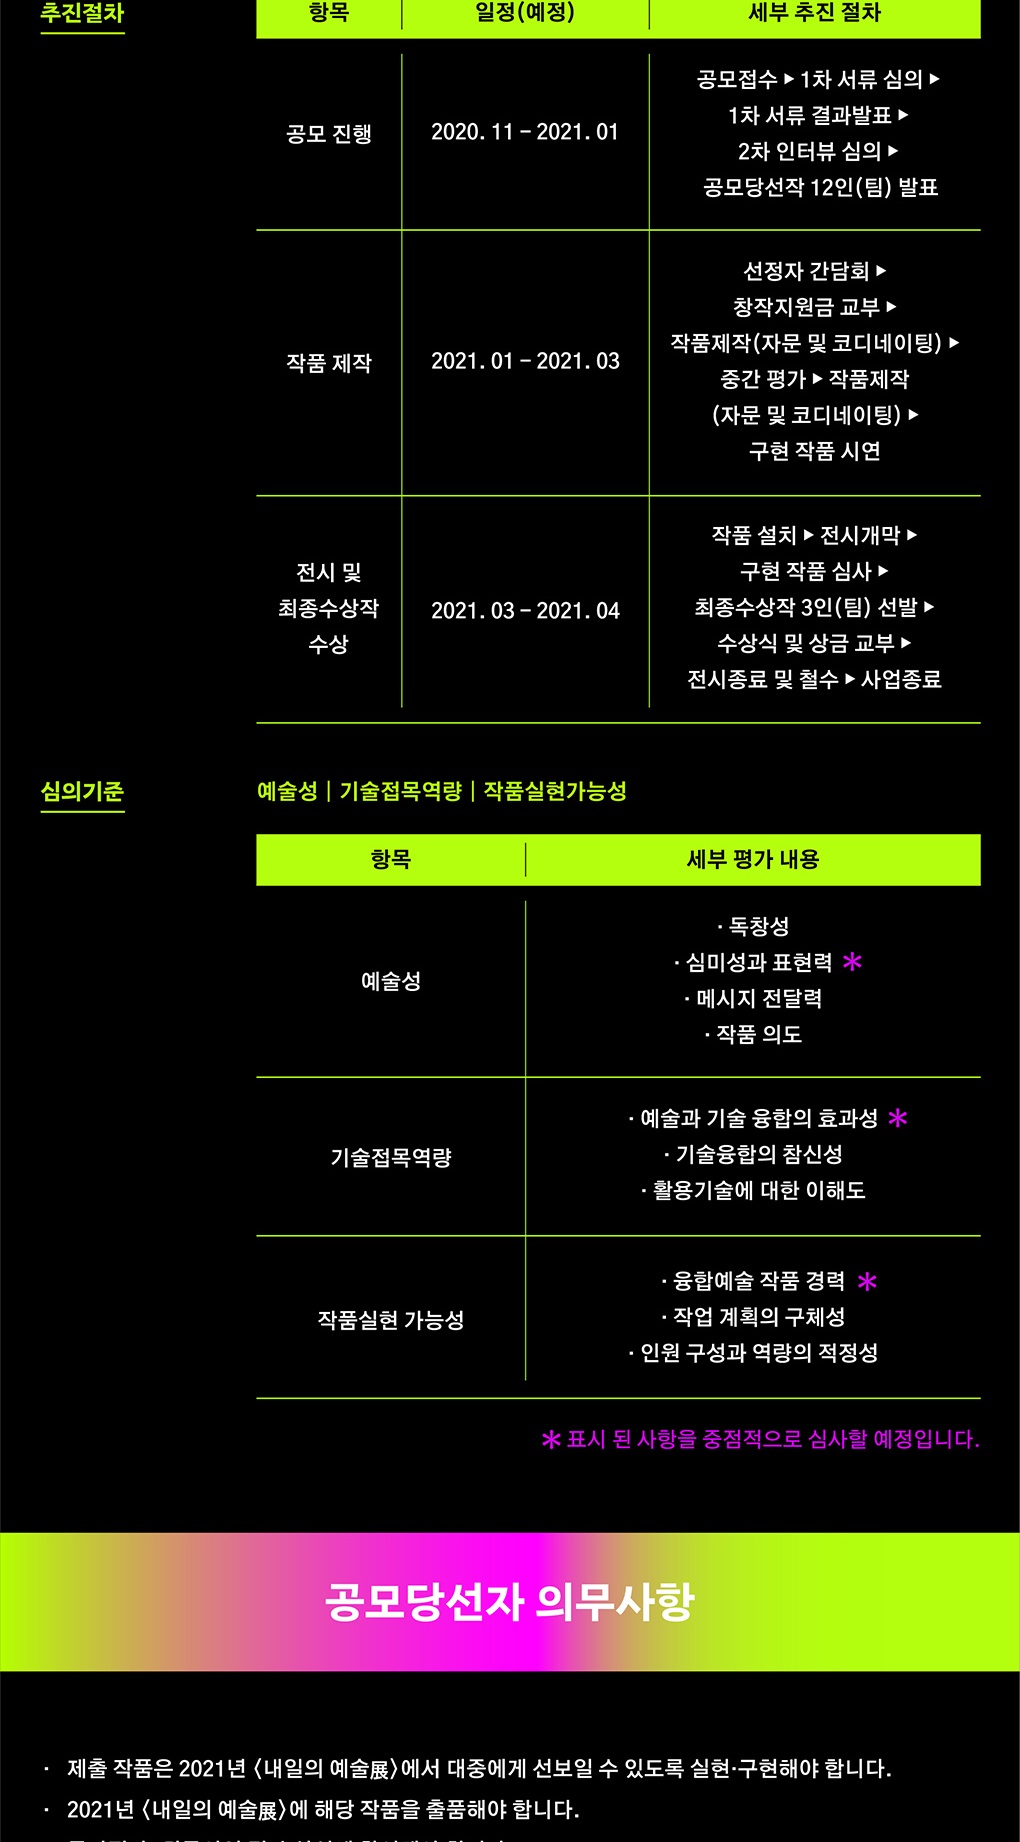 예술의전당과 한국전력이 함께하는 〈2021 뉴미디어 아트 공모제 - 내일의 예술展〉모집 공고〉 (4)